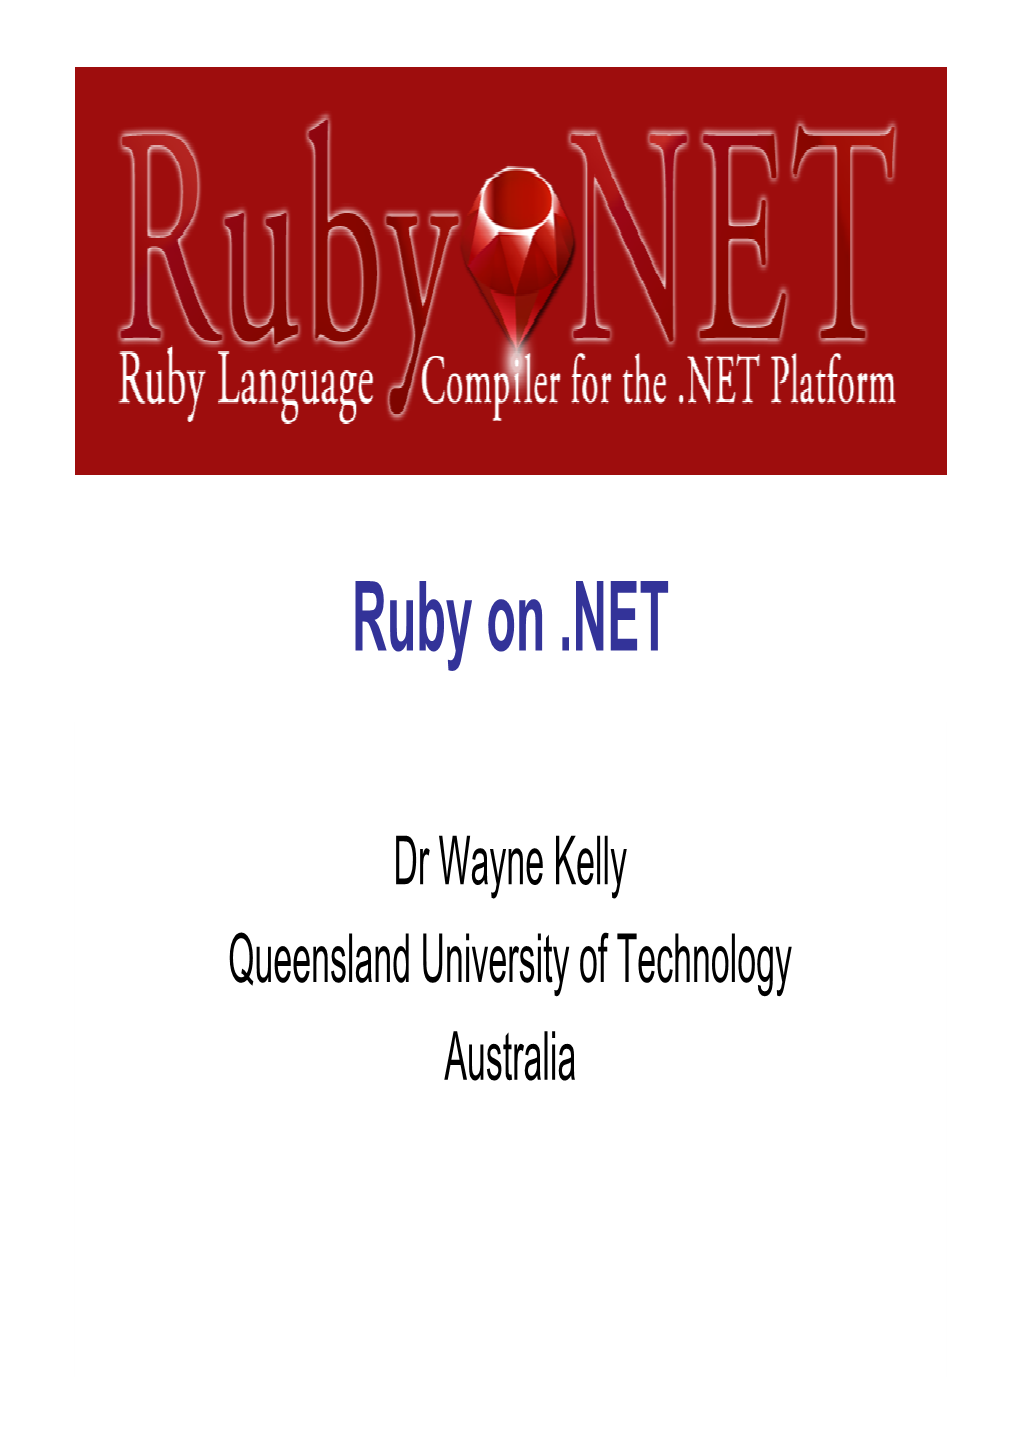 Ruby.NET & Ironruby